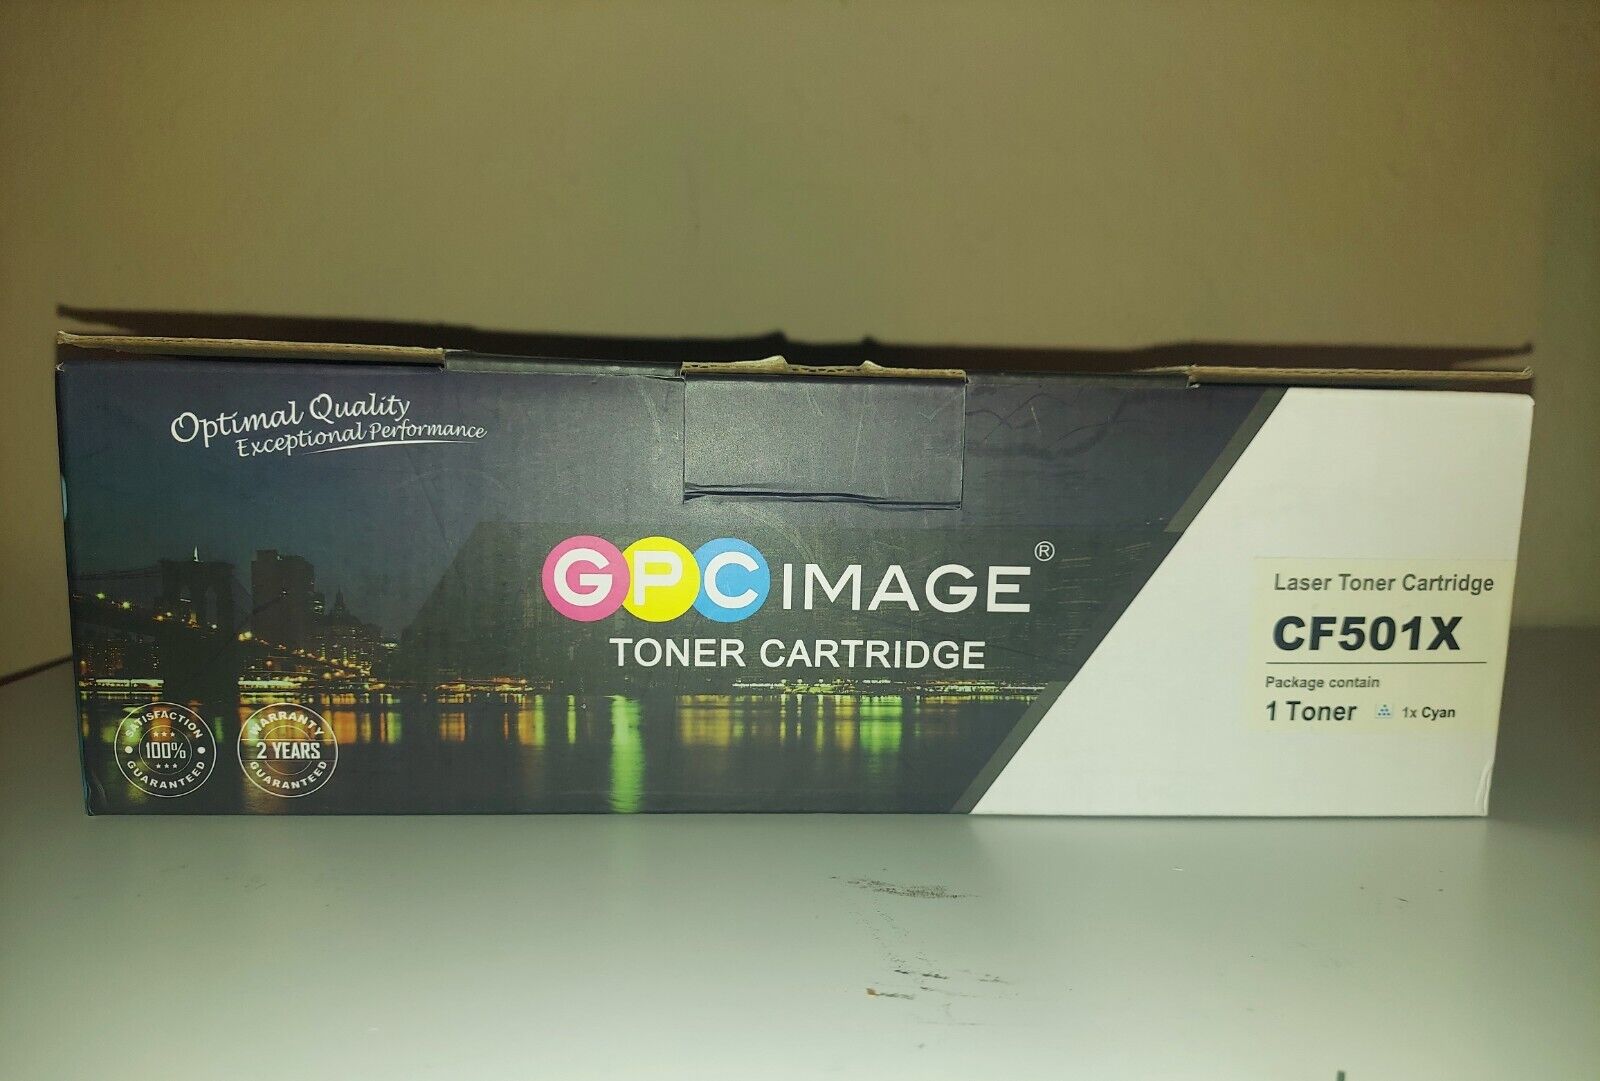 GPC IMAGE LASER TONER CARTRIDGE  CF501X